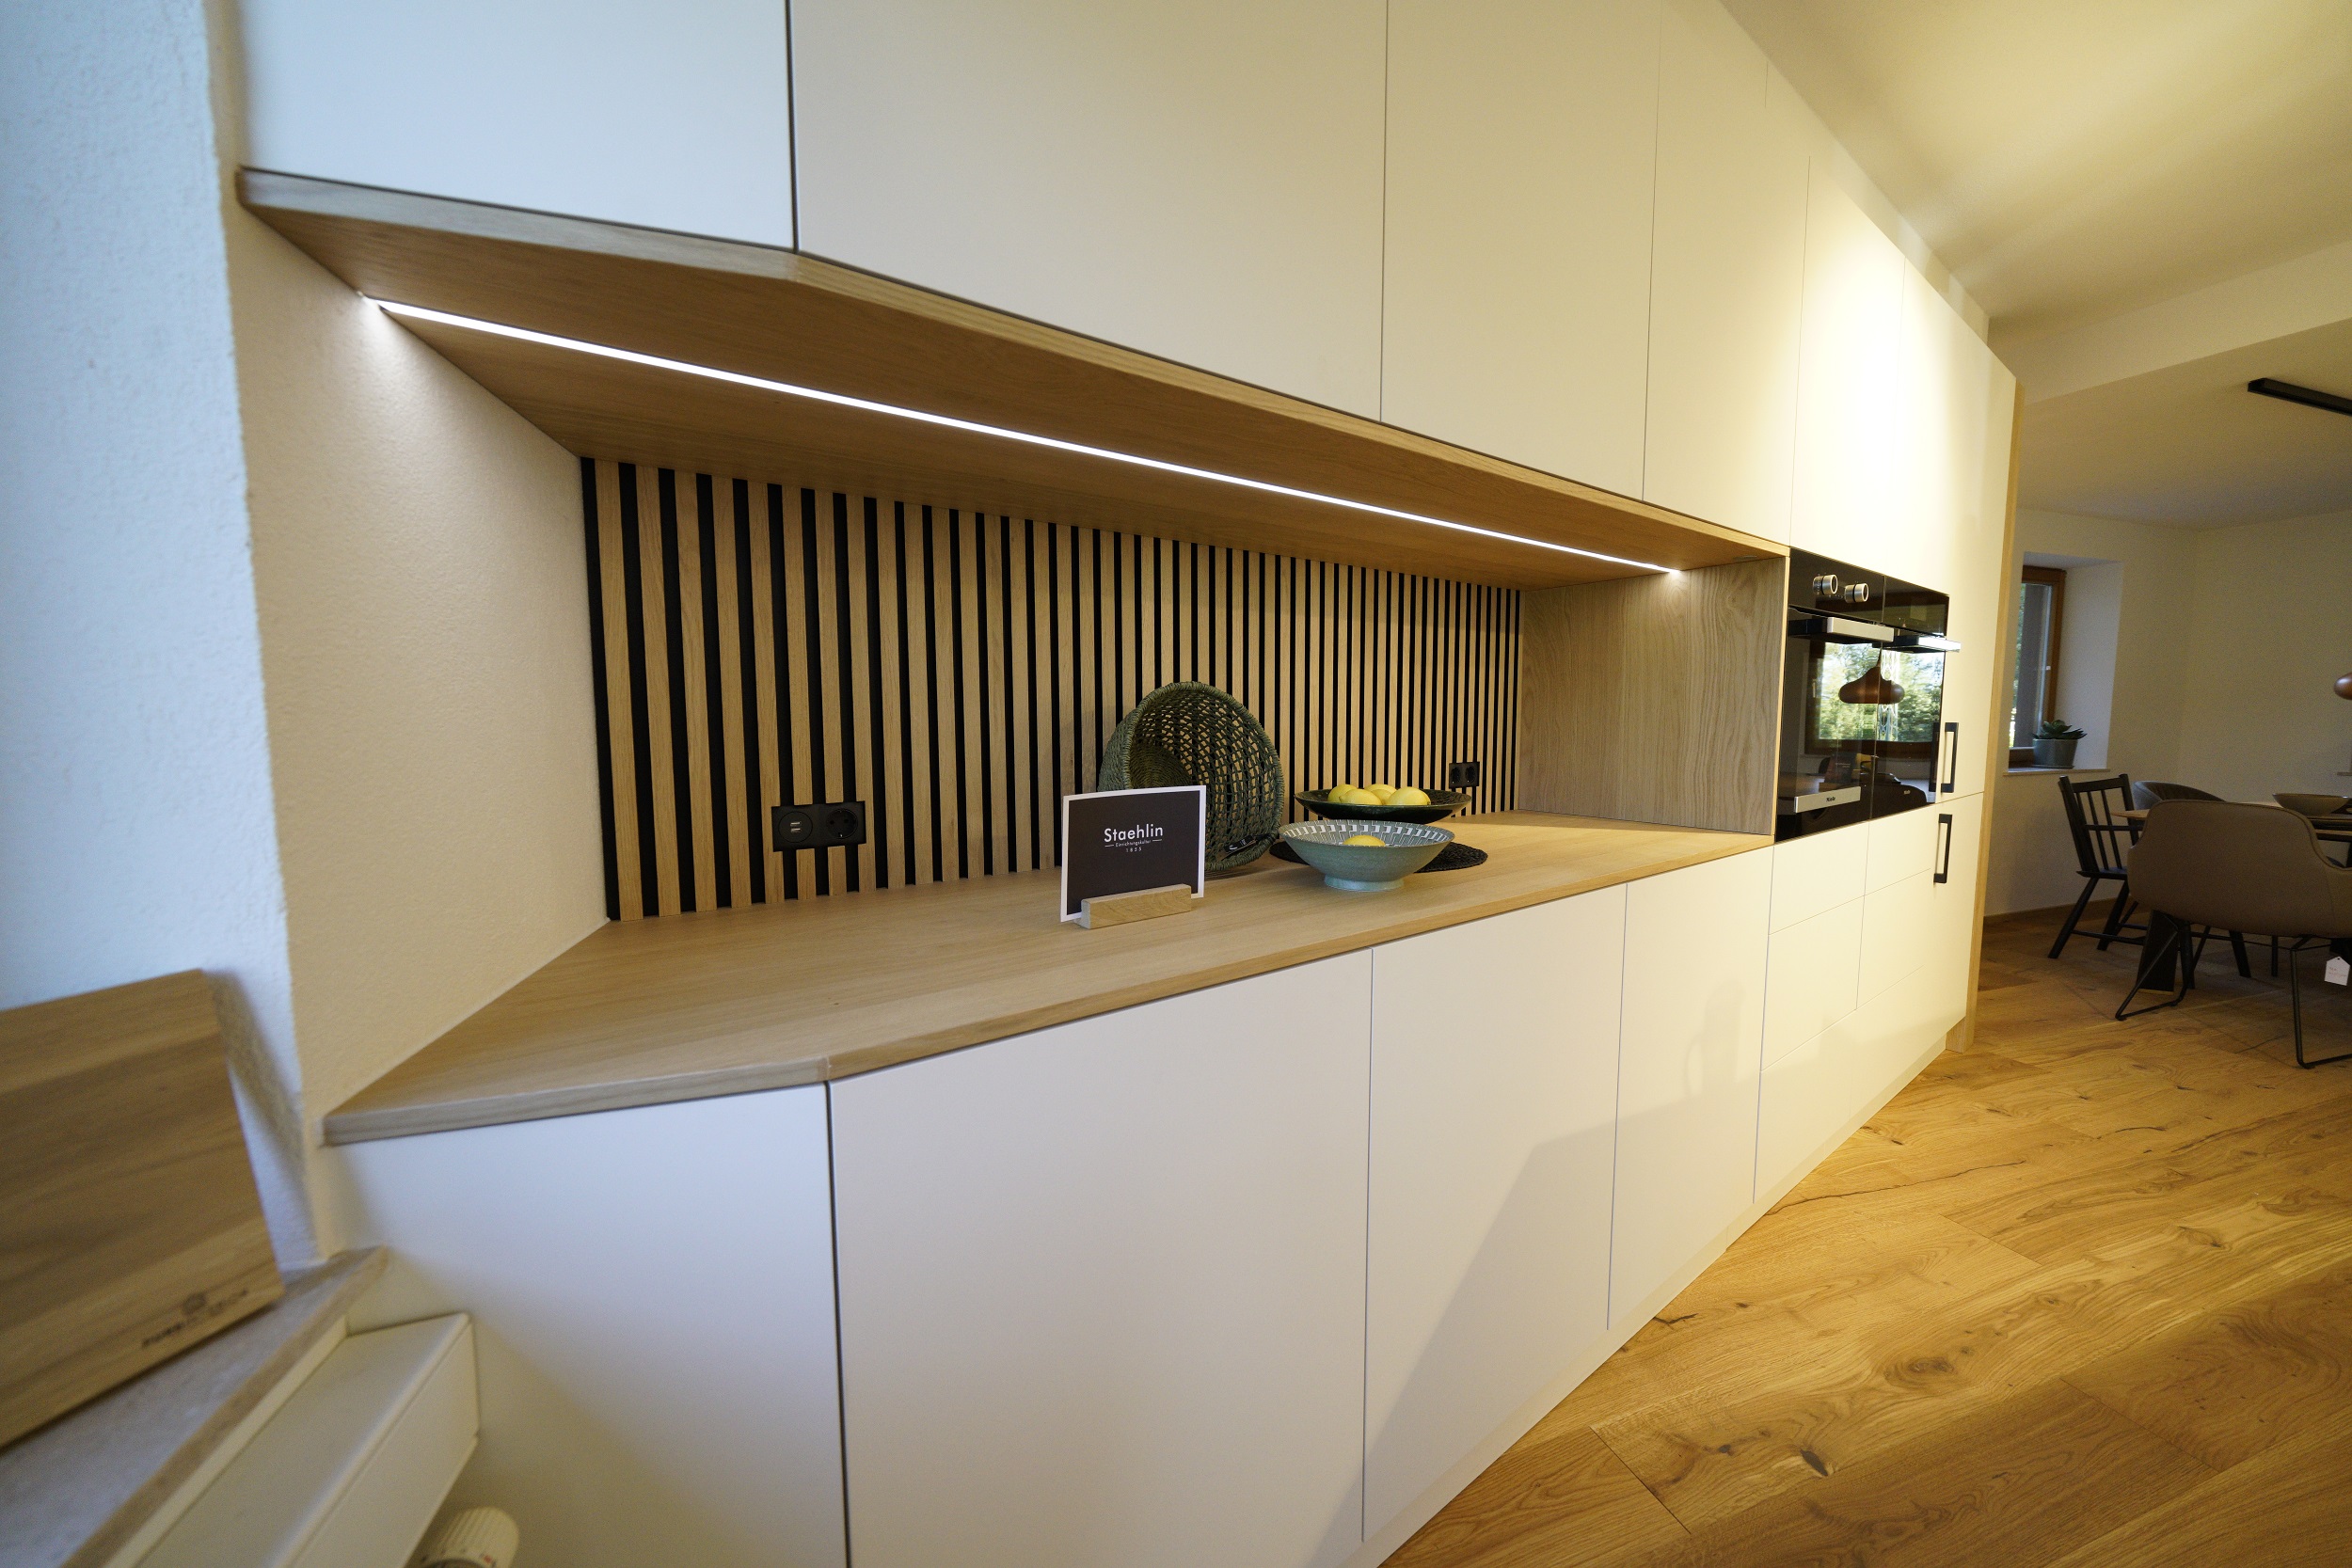 Küchenzeile in weiß matt mit Eiche-Küchenrückwand, LED-beleuchtet